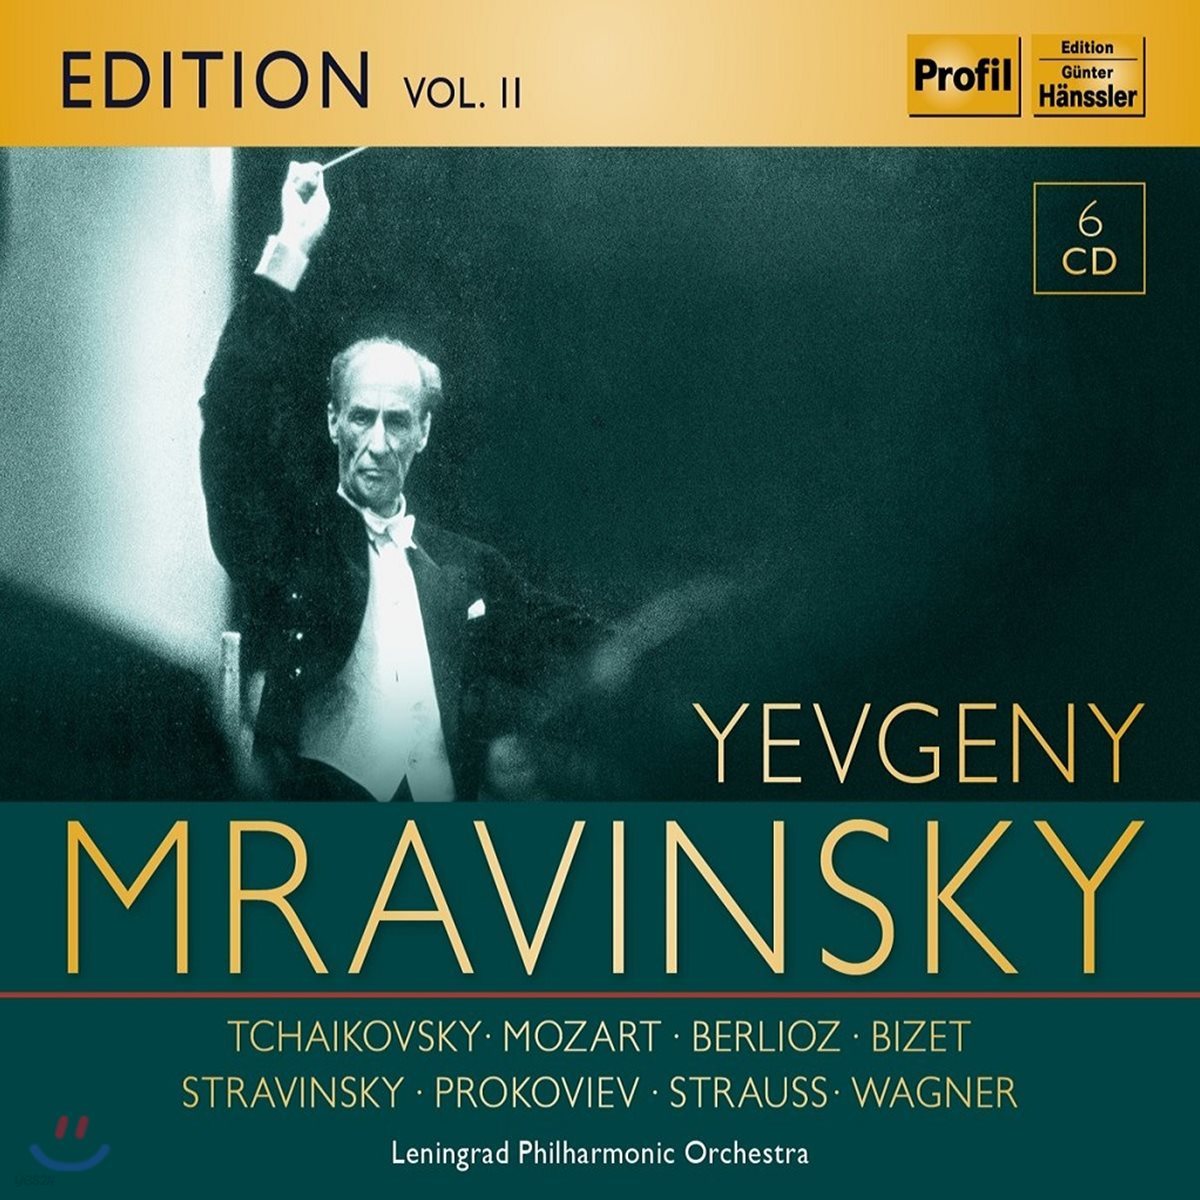 예브게니 므라빈스키 에디션 2집 (Evgeni Mravinsky Edition Vol. 2 - Tchaikovsky / Mozart / Berlioz / Stravinsky / Wagner)